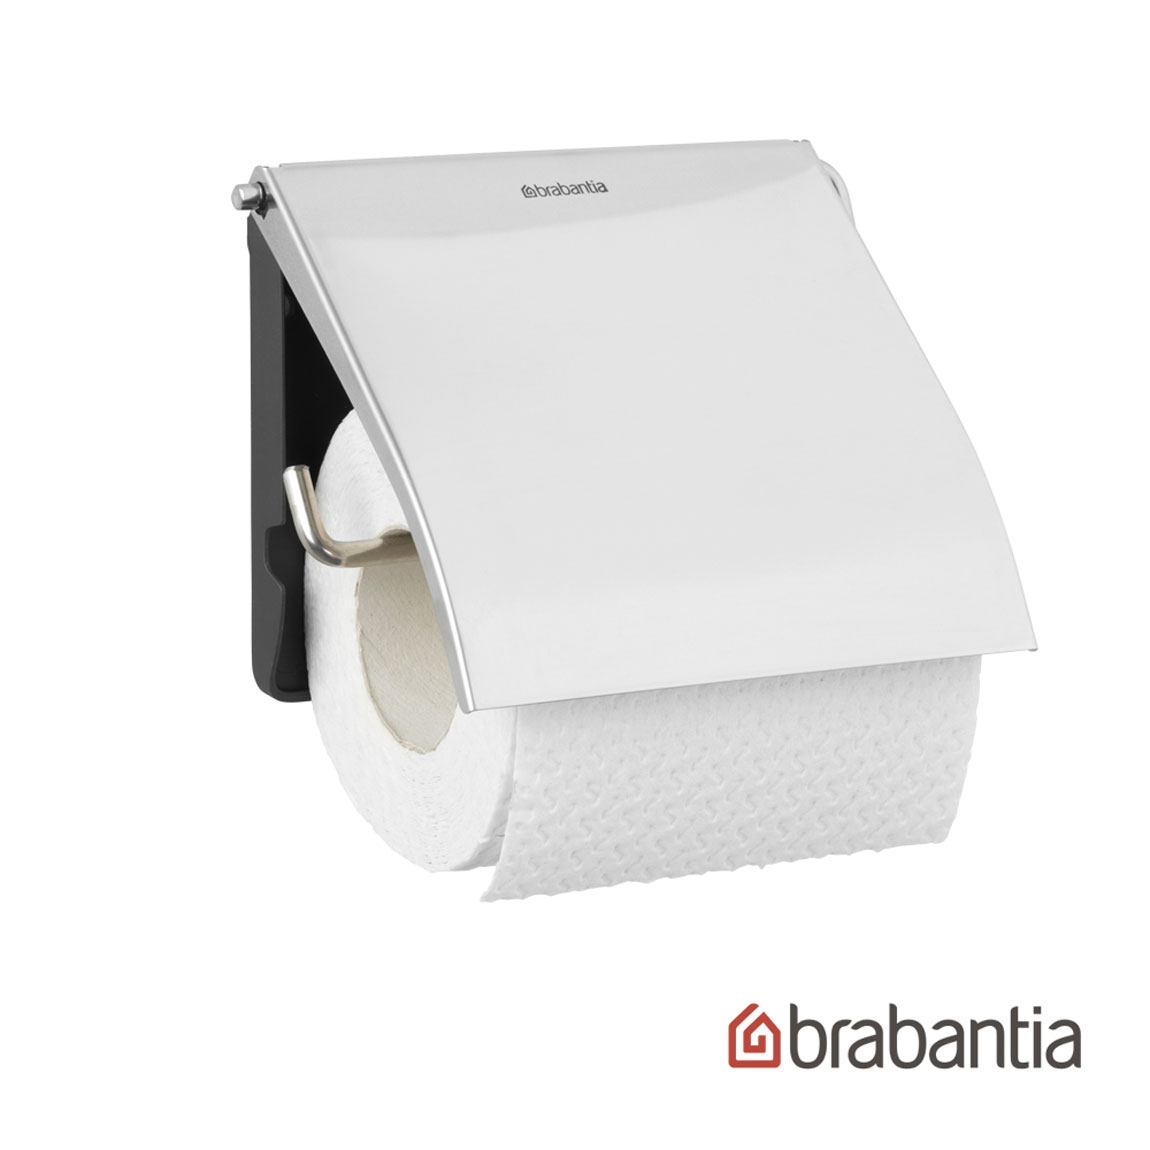 【荷蘭Brabantia】廁所捲筒衛生紙架-亮面 #年中慶